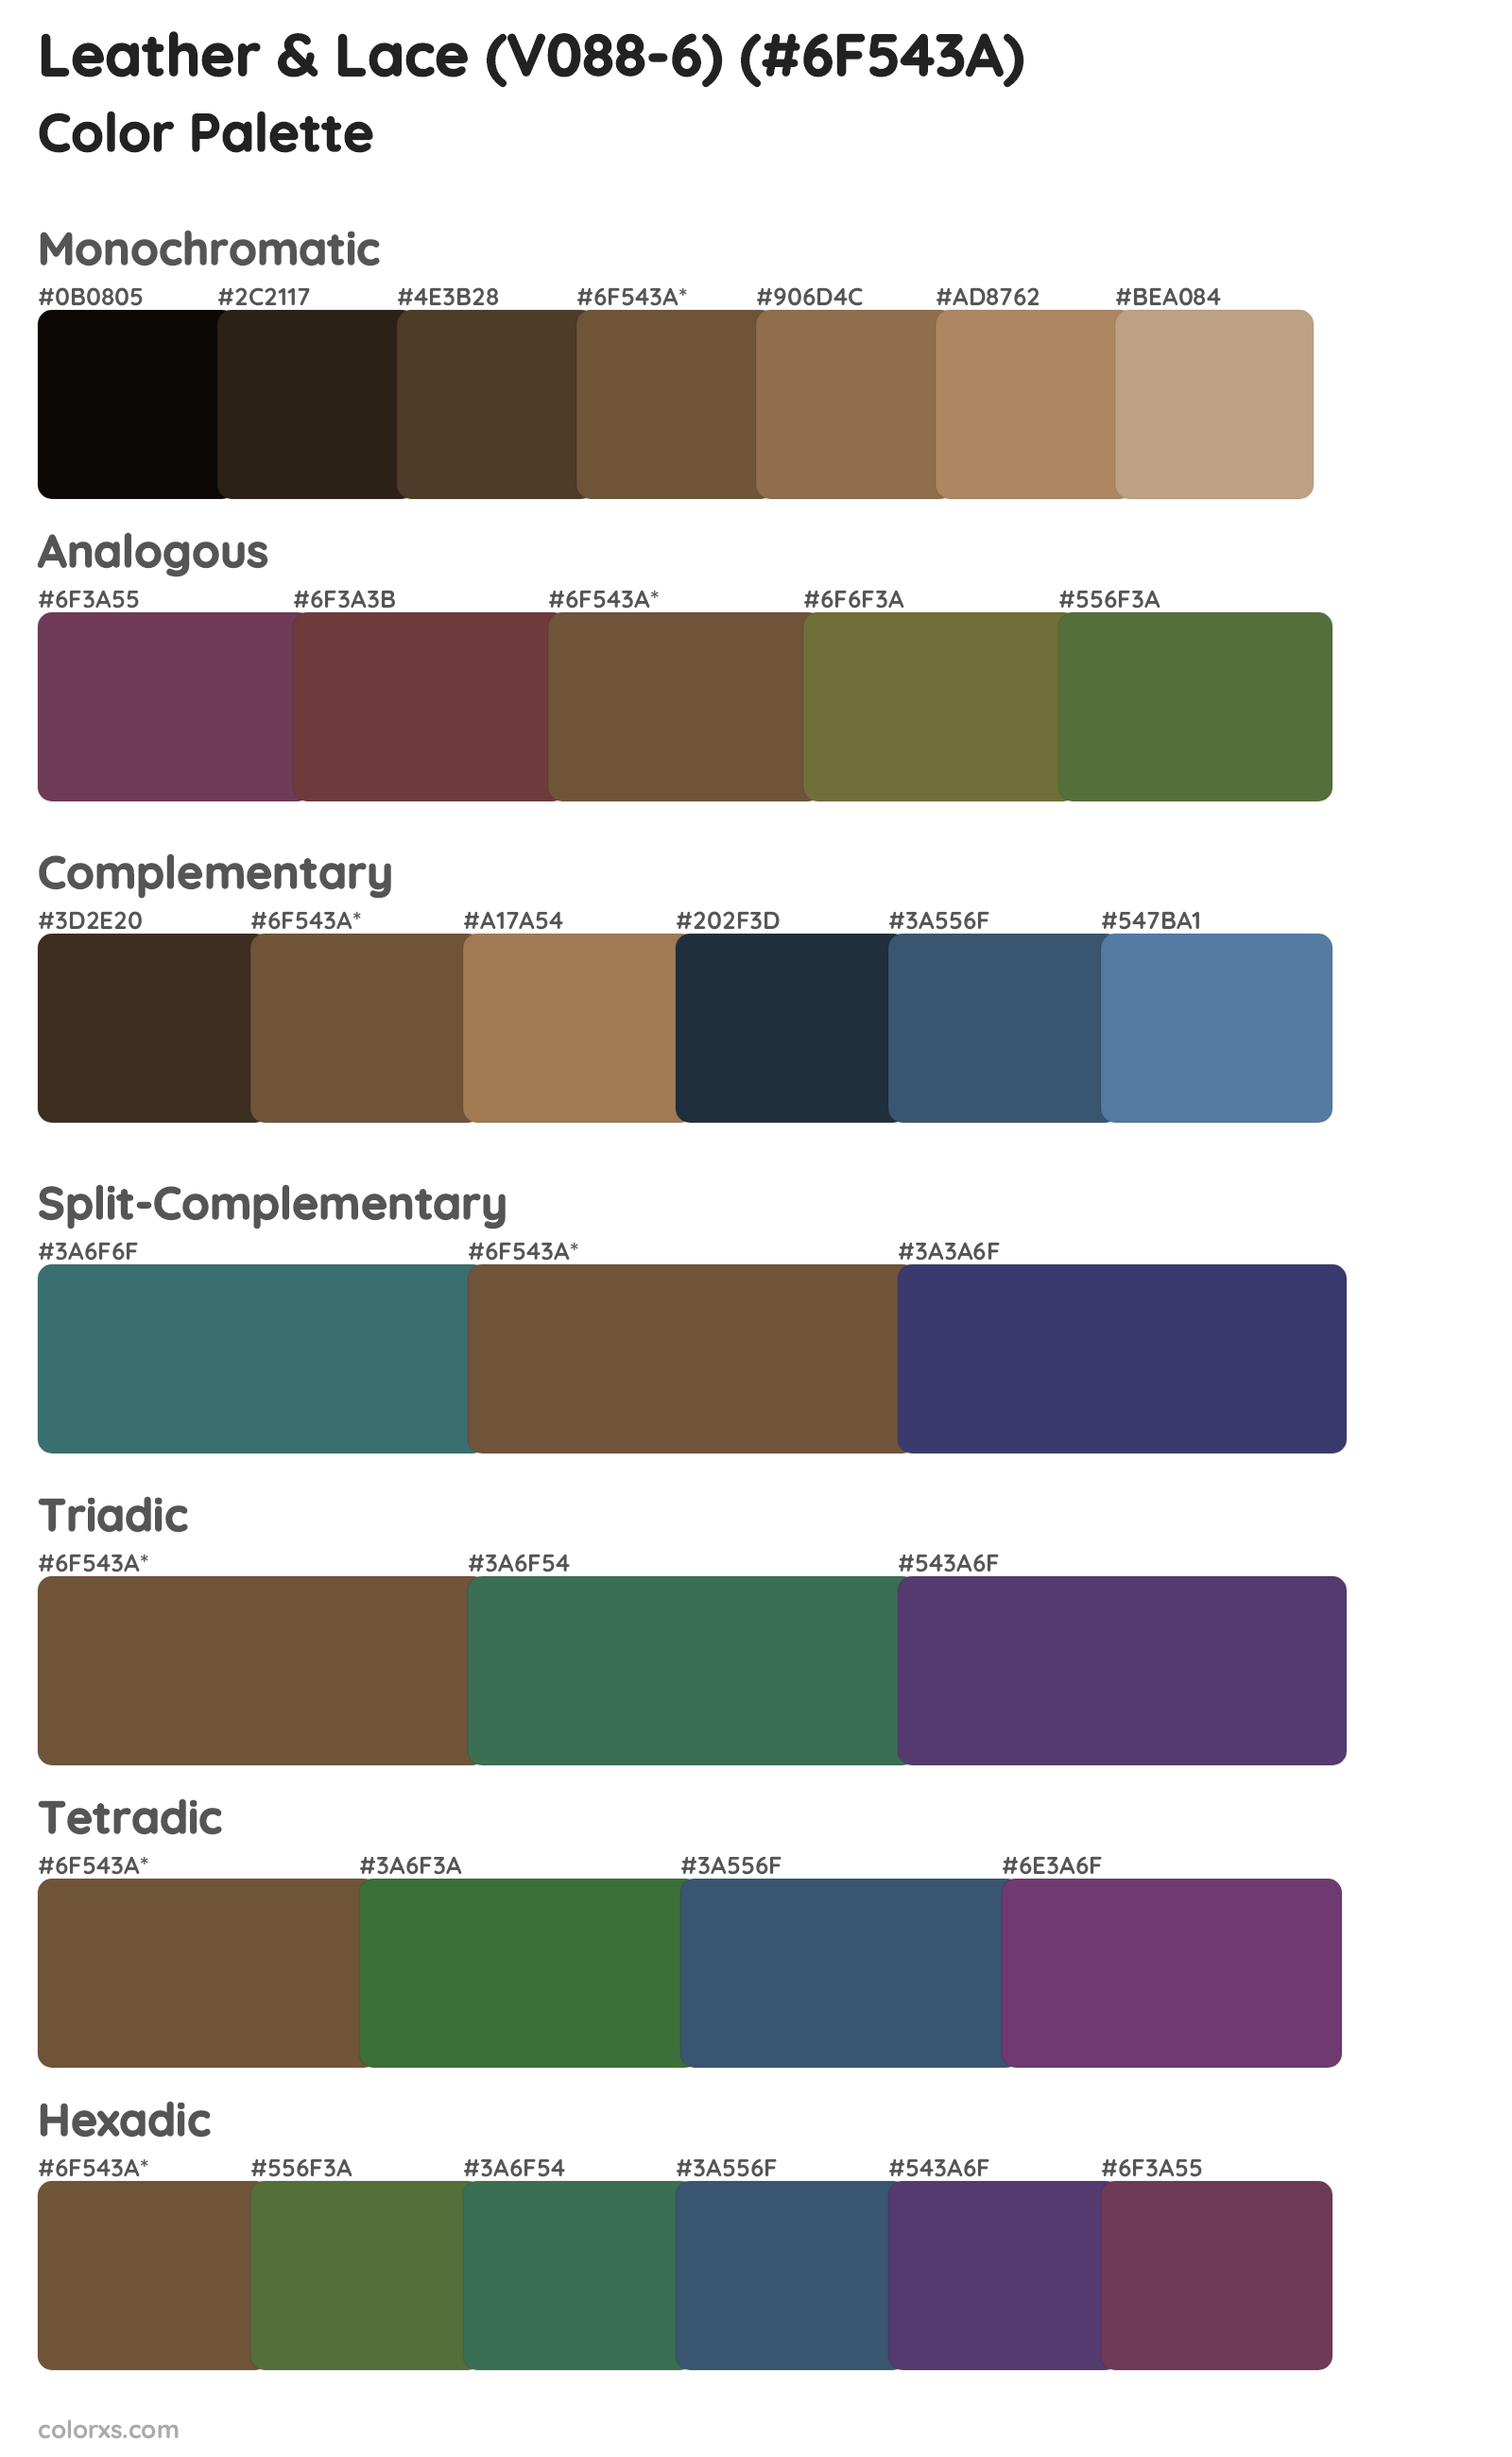 Leather & Lace (V088-6) Color Scheme Palettes